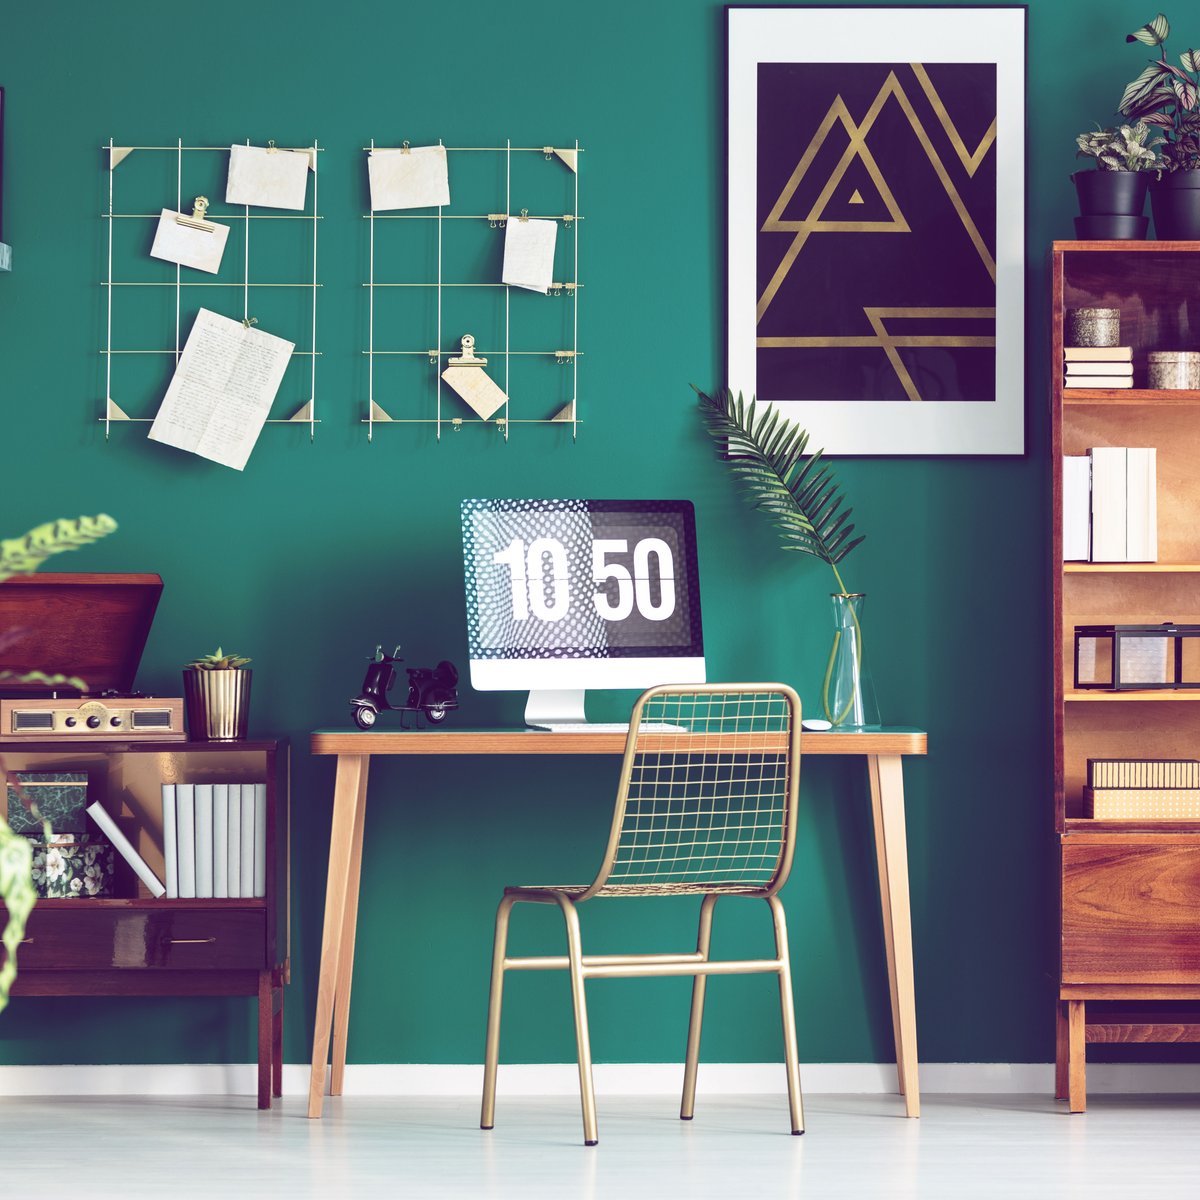 Home-Office mit IKEA: Die 11 coolsten Produkte unter 15 Euro